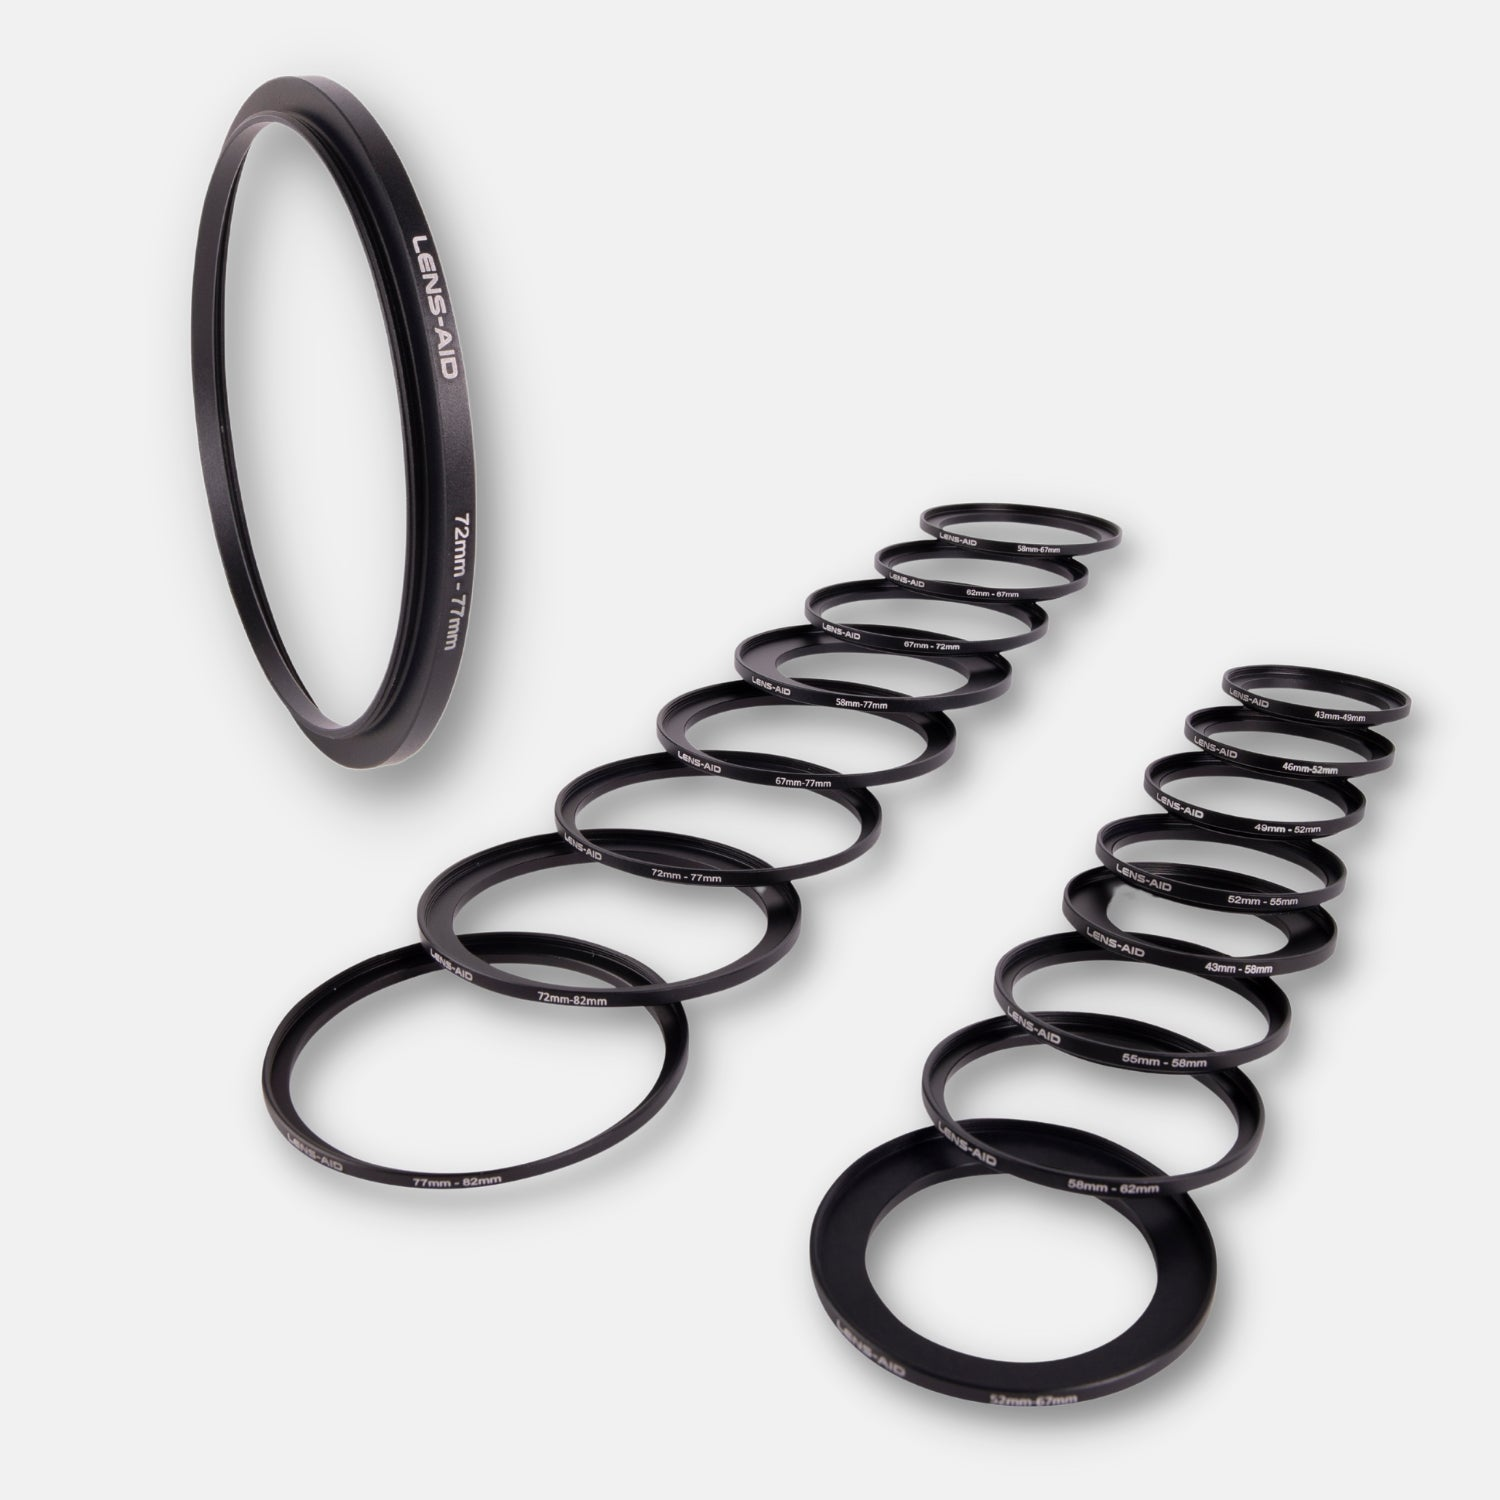 passend Ringe, Filtergewinde Step-Up Objektive Schwarz, für mit 43-49mm, LENS-AID